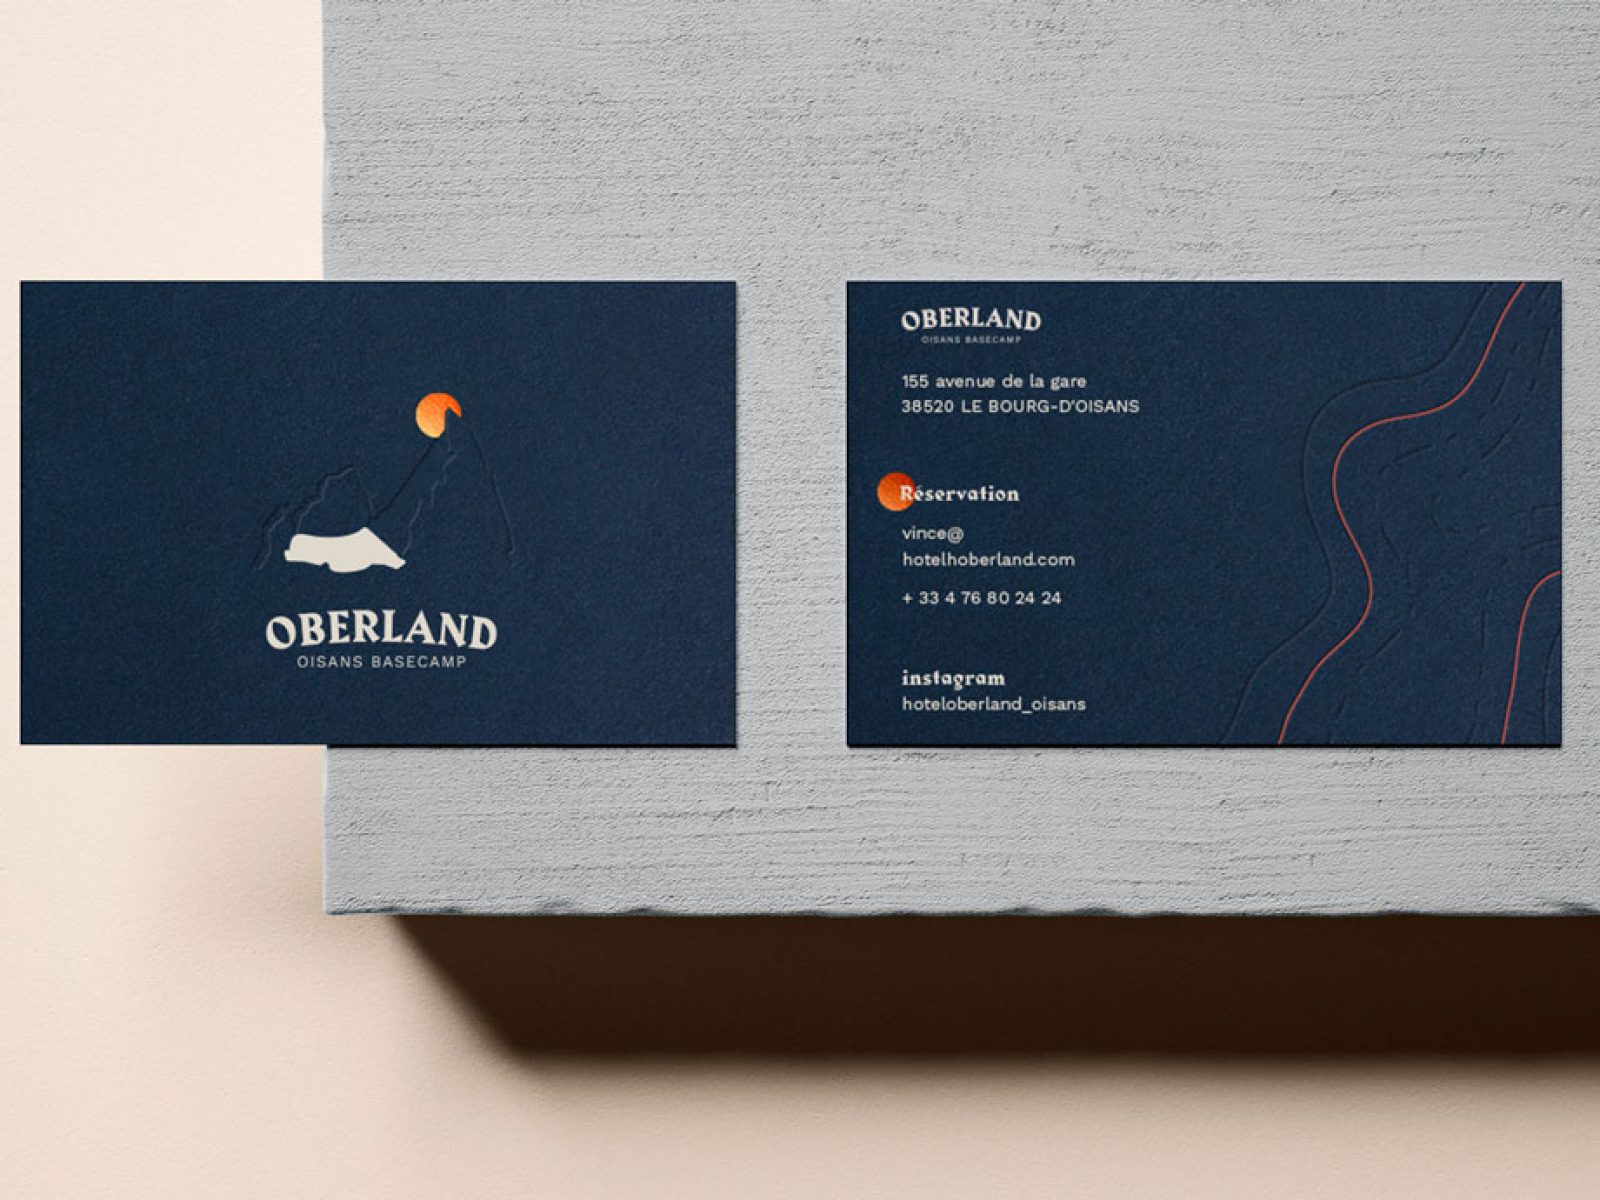 Oberland oisans basecamp hotel carte de visite